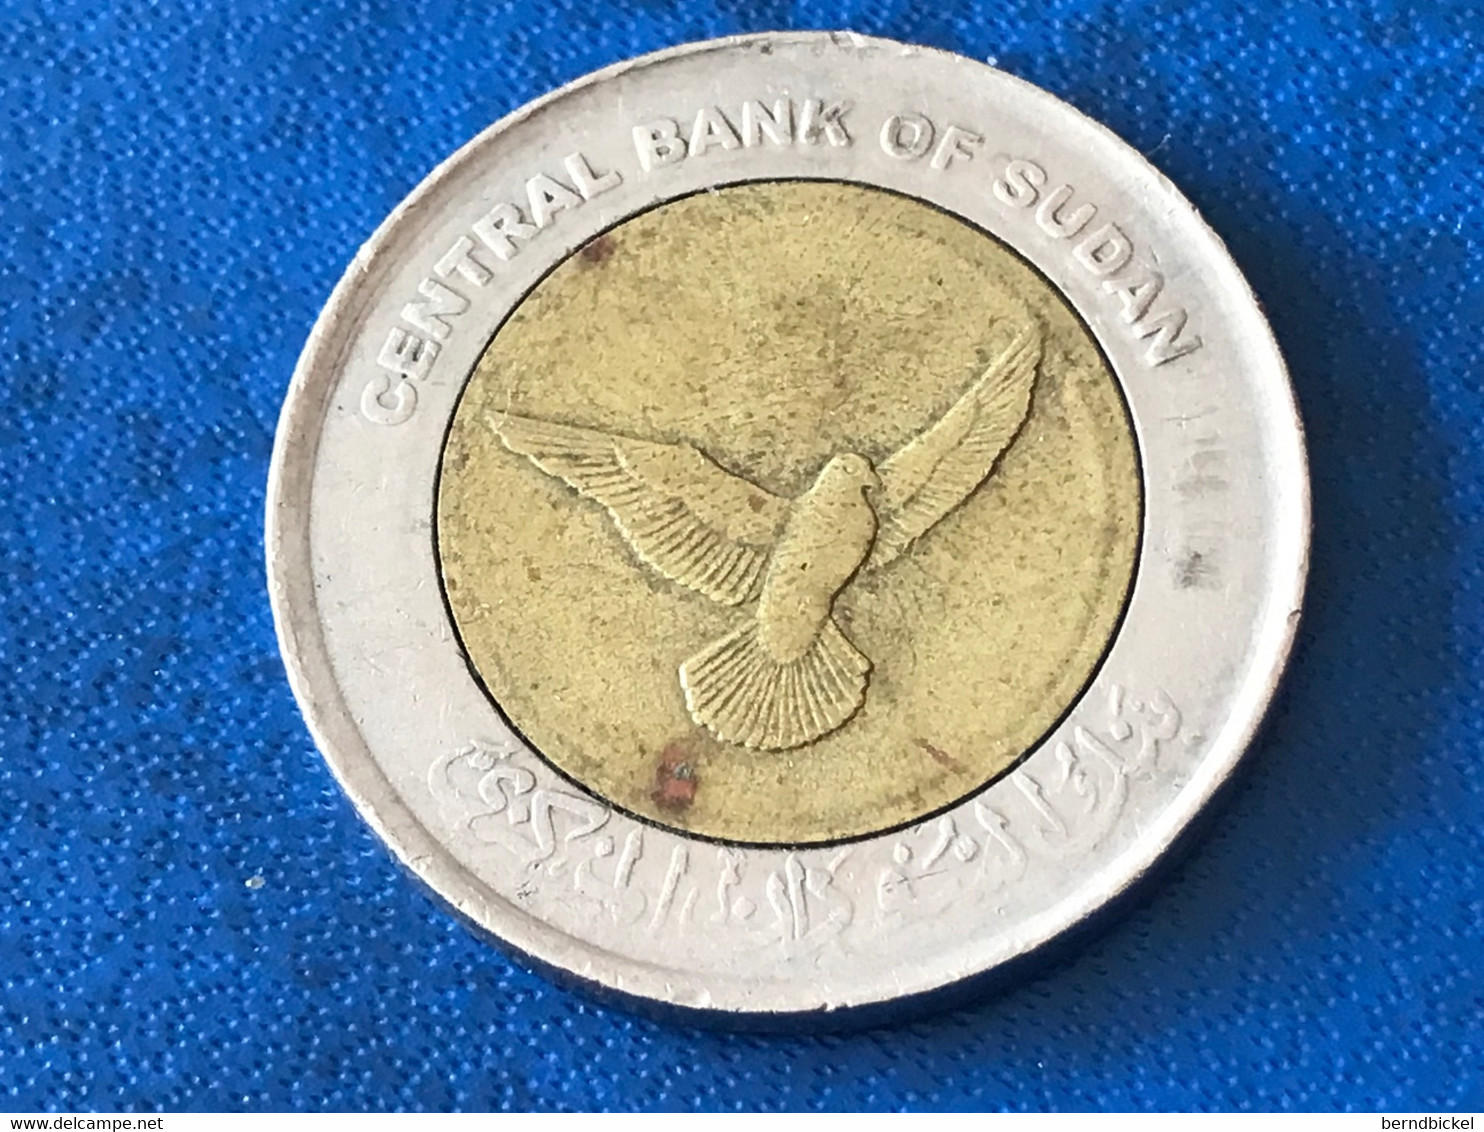 Münze Münzen Umlaufmünze Sudan 50 Piaster 2006 - Soedan